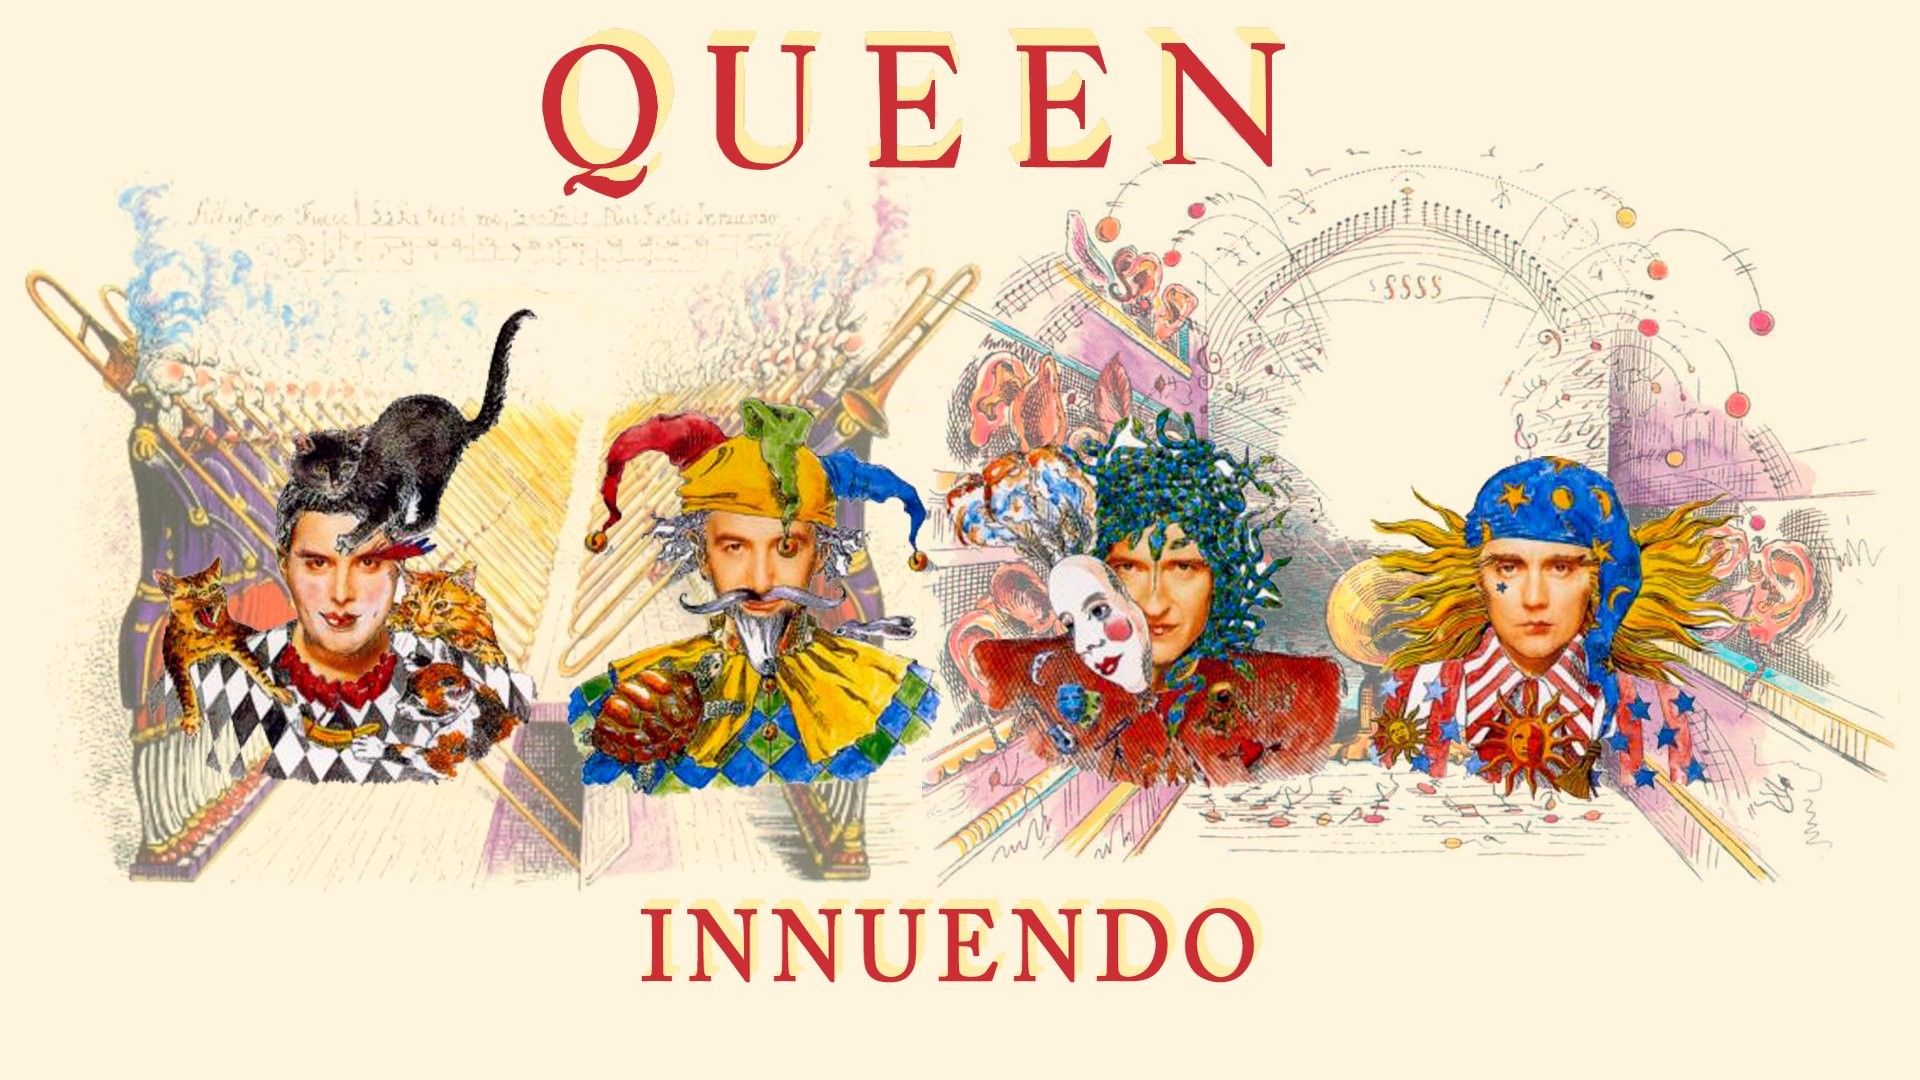 The cover of queen's album 'innuendo - 